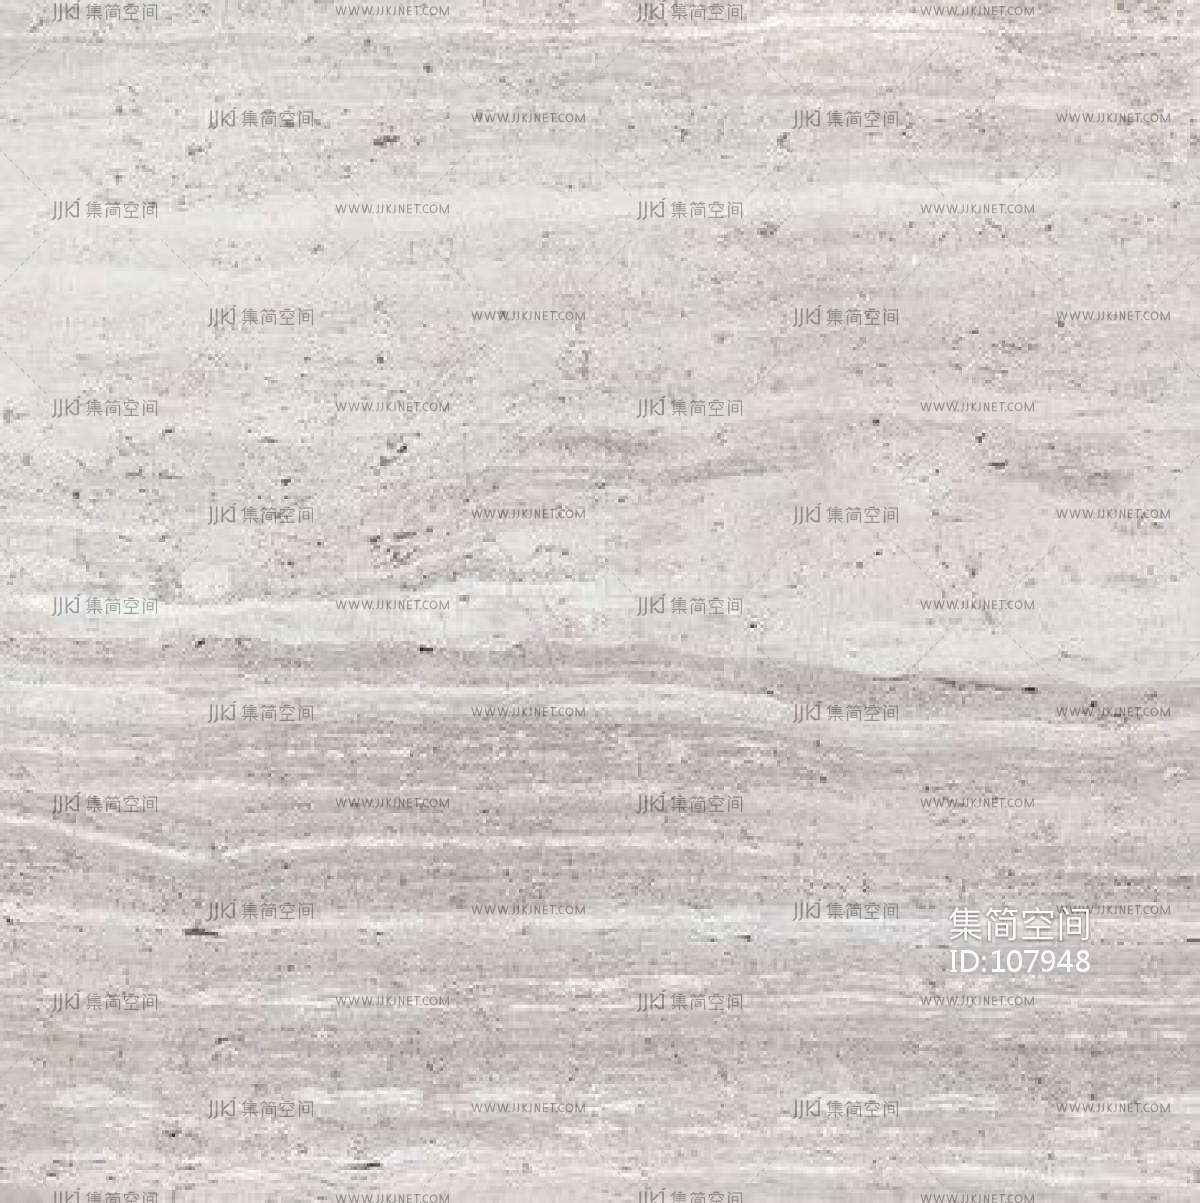 法国木纹灰大理石石材 (7)材质贴图下载-【集简空间】「每日更新」